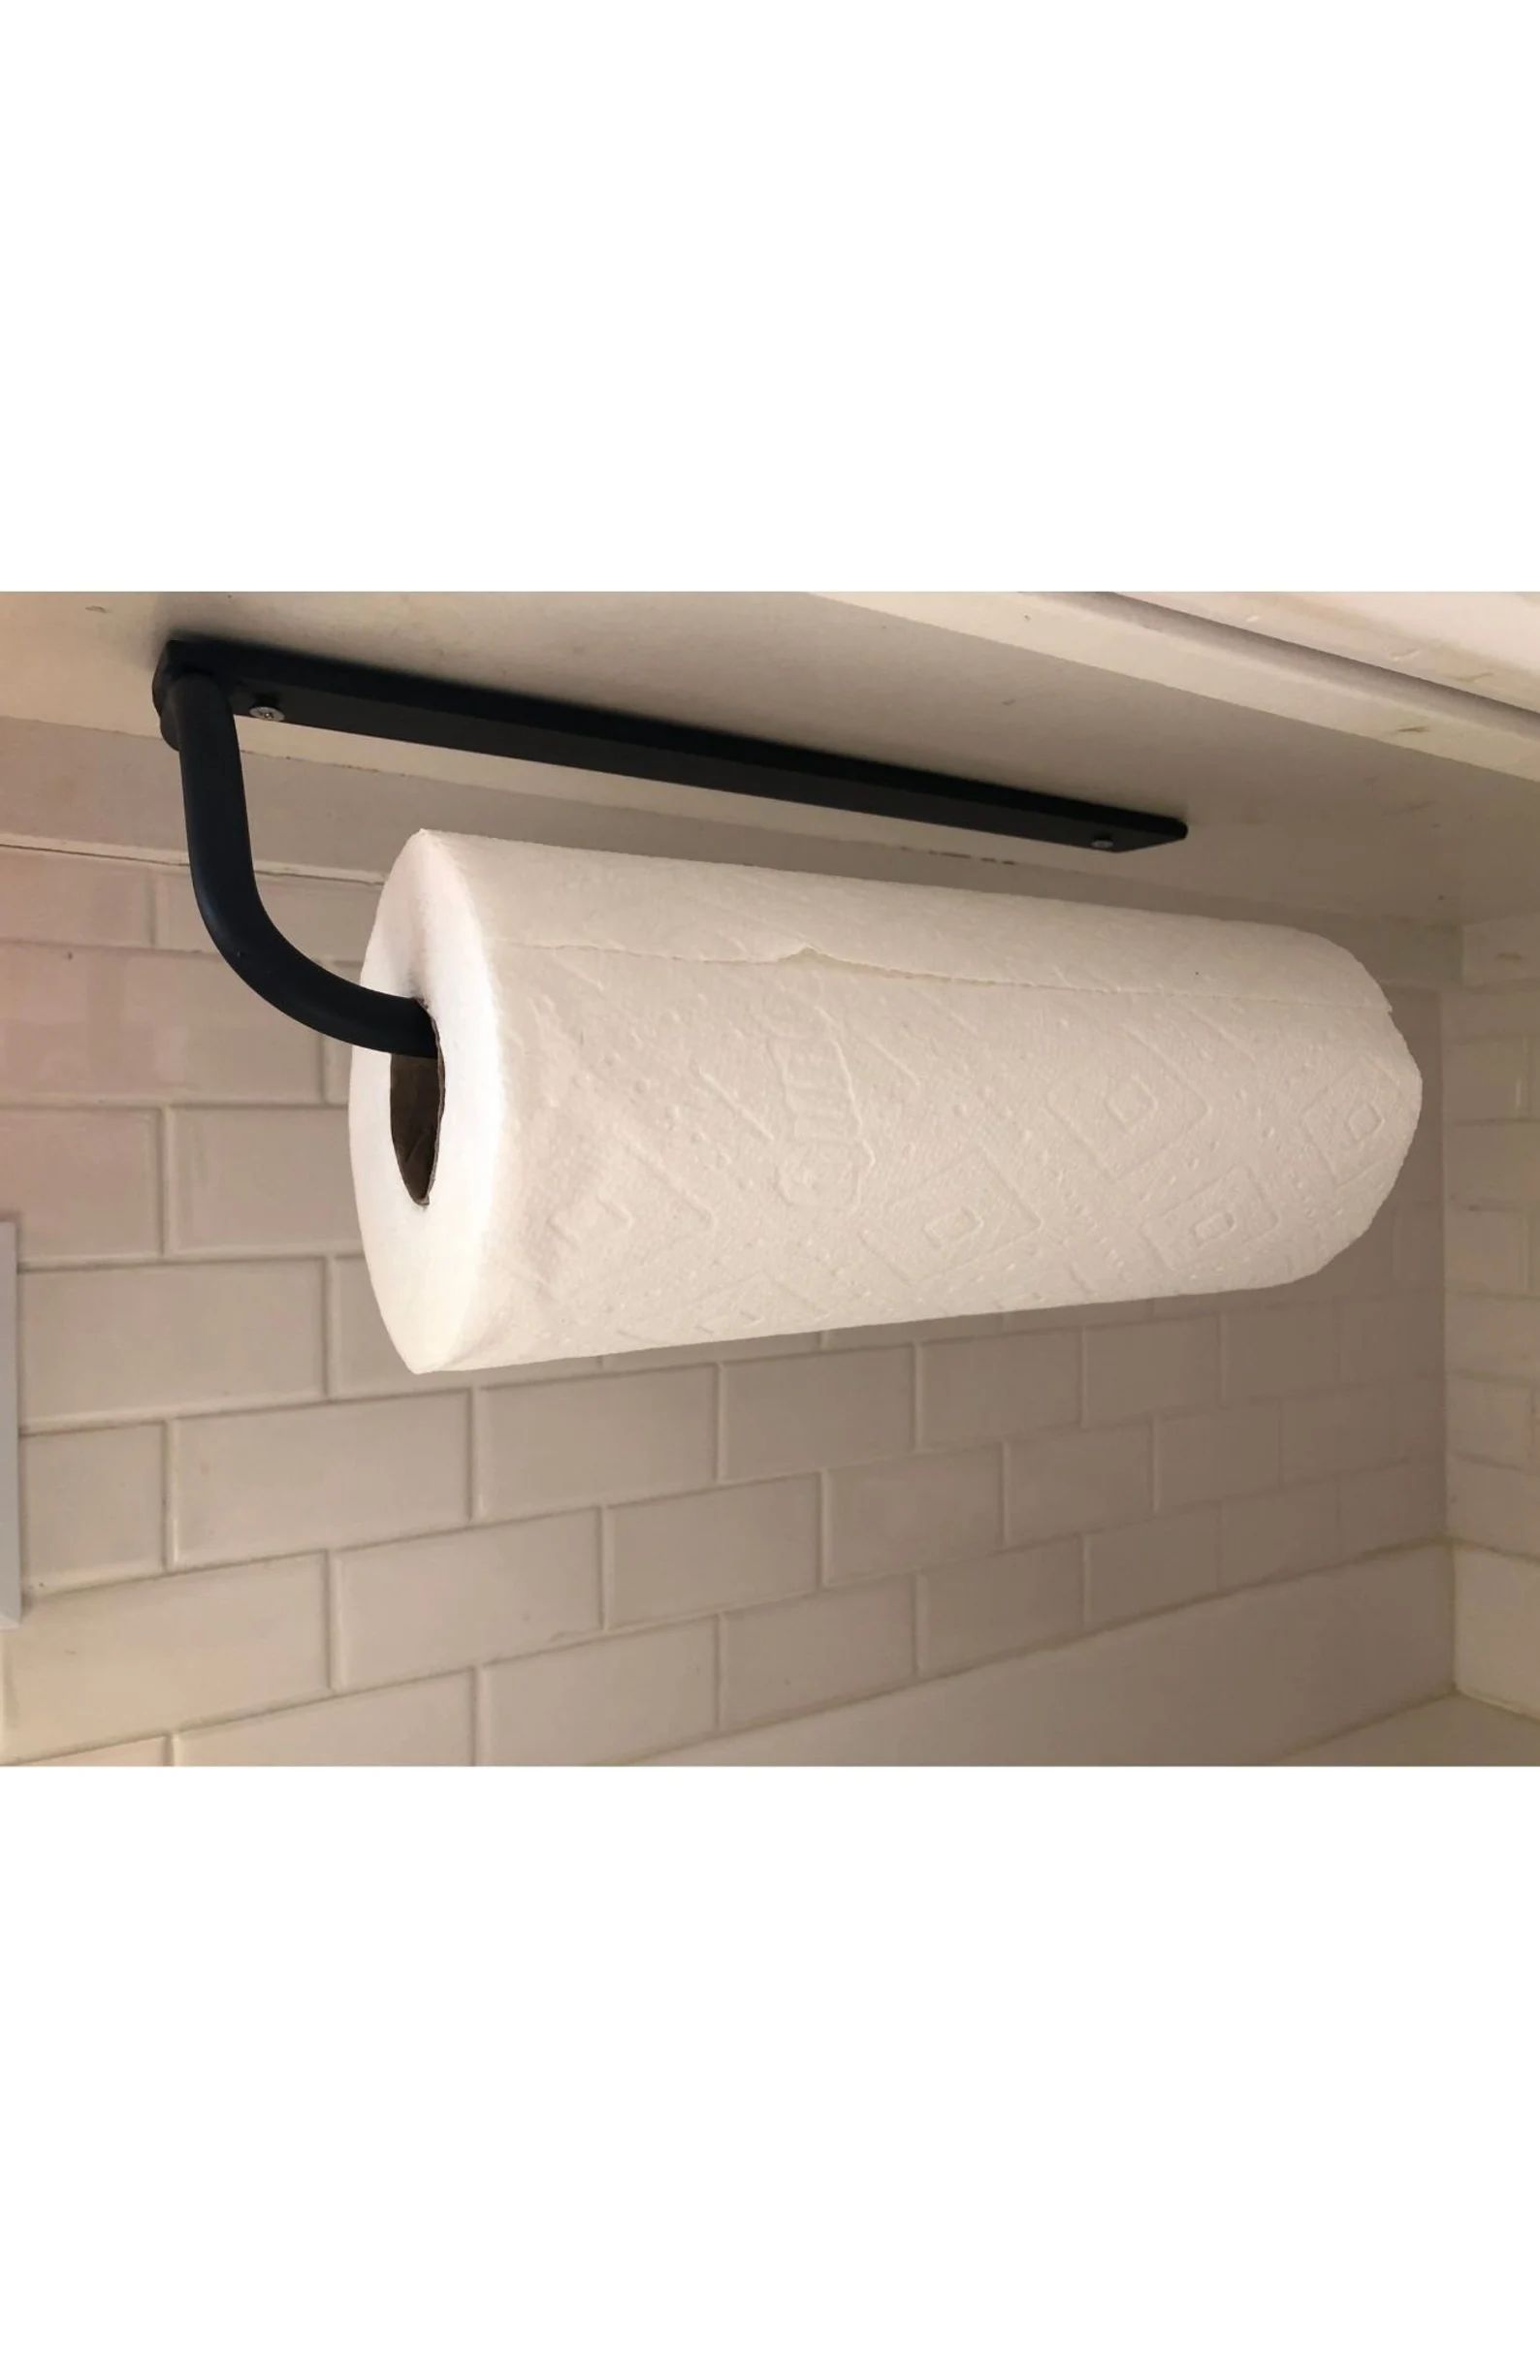 Steel Paper towel holder, Kitchen Fixture,  Kitchen towel holder, Wall Mounted Paper Towel Holder... | Etsy (US)